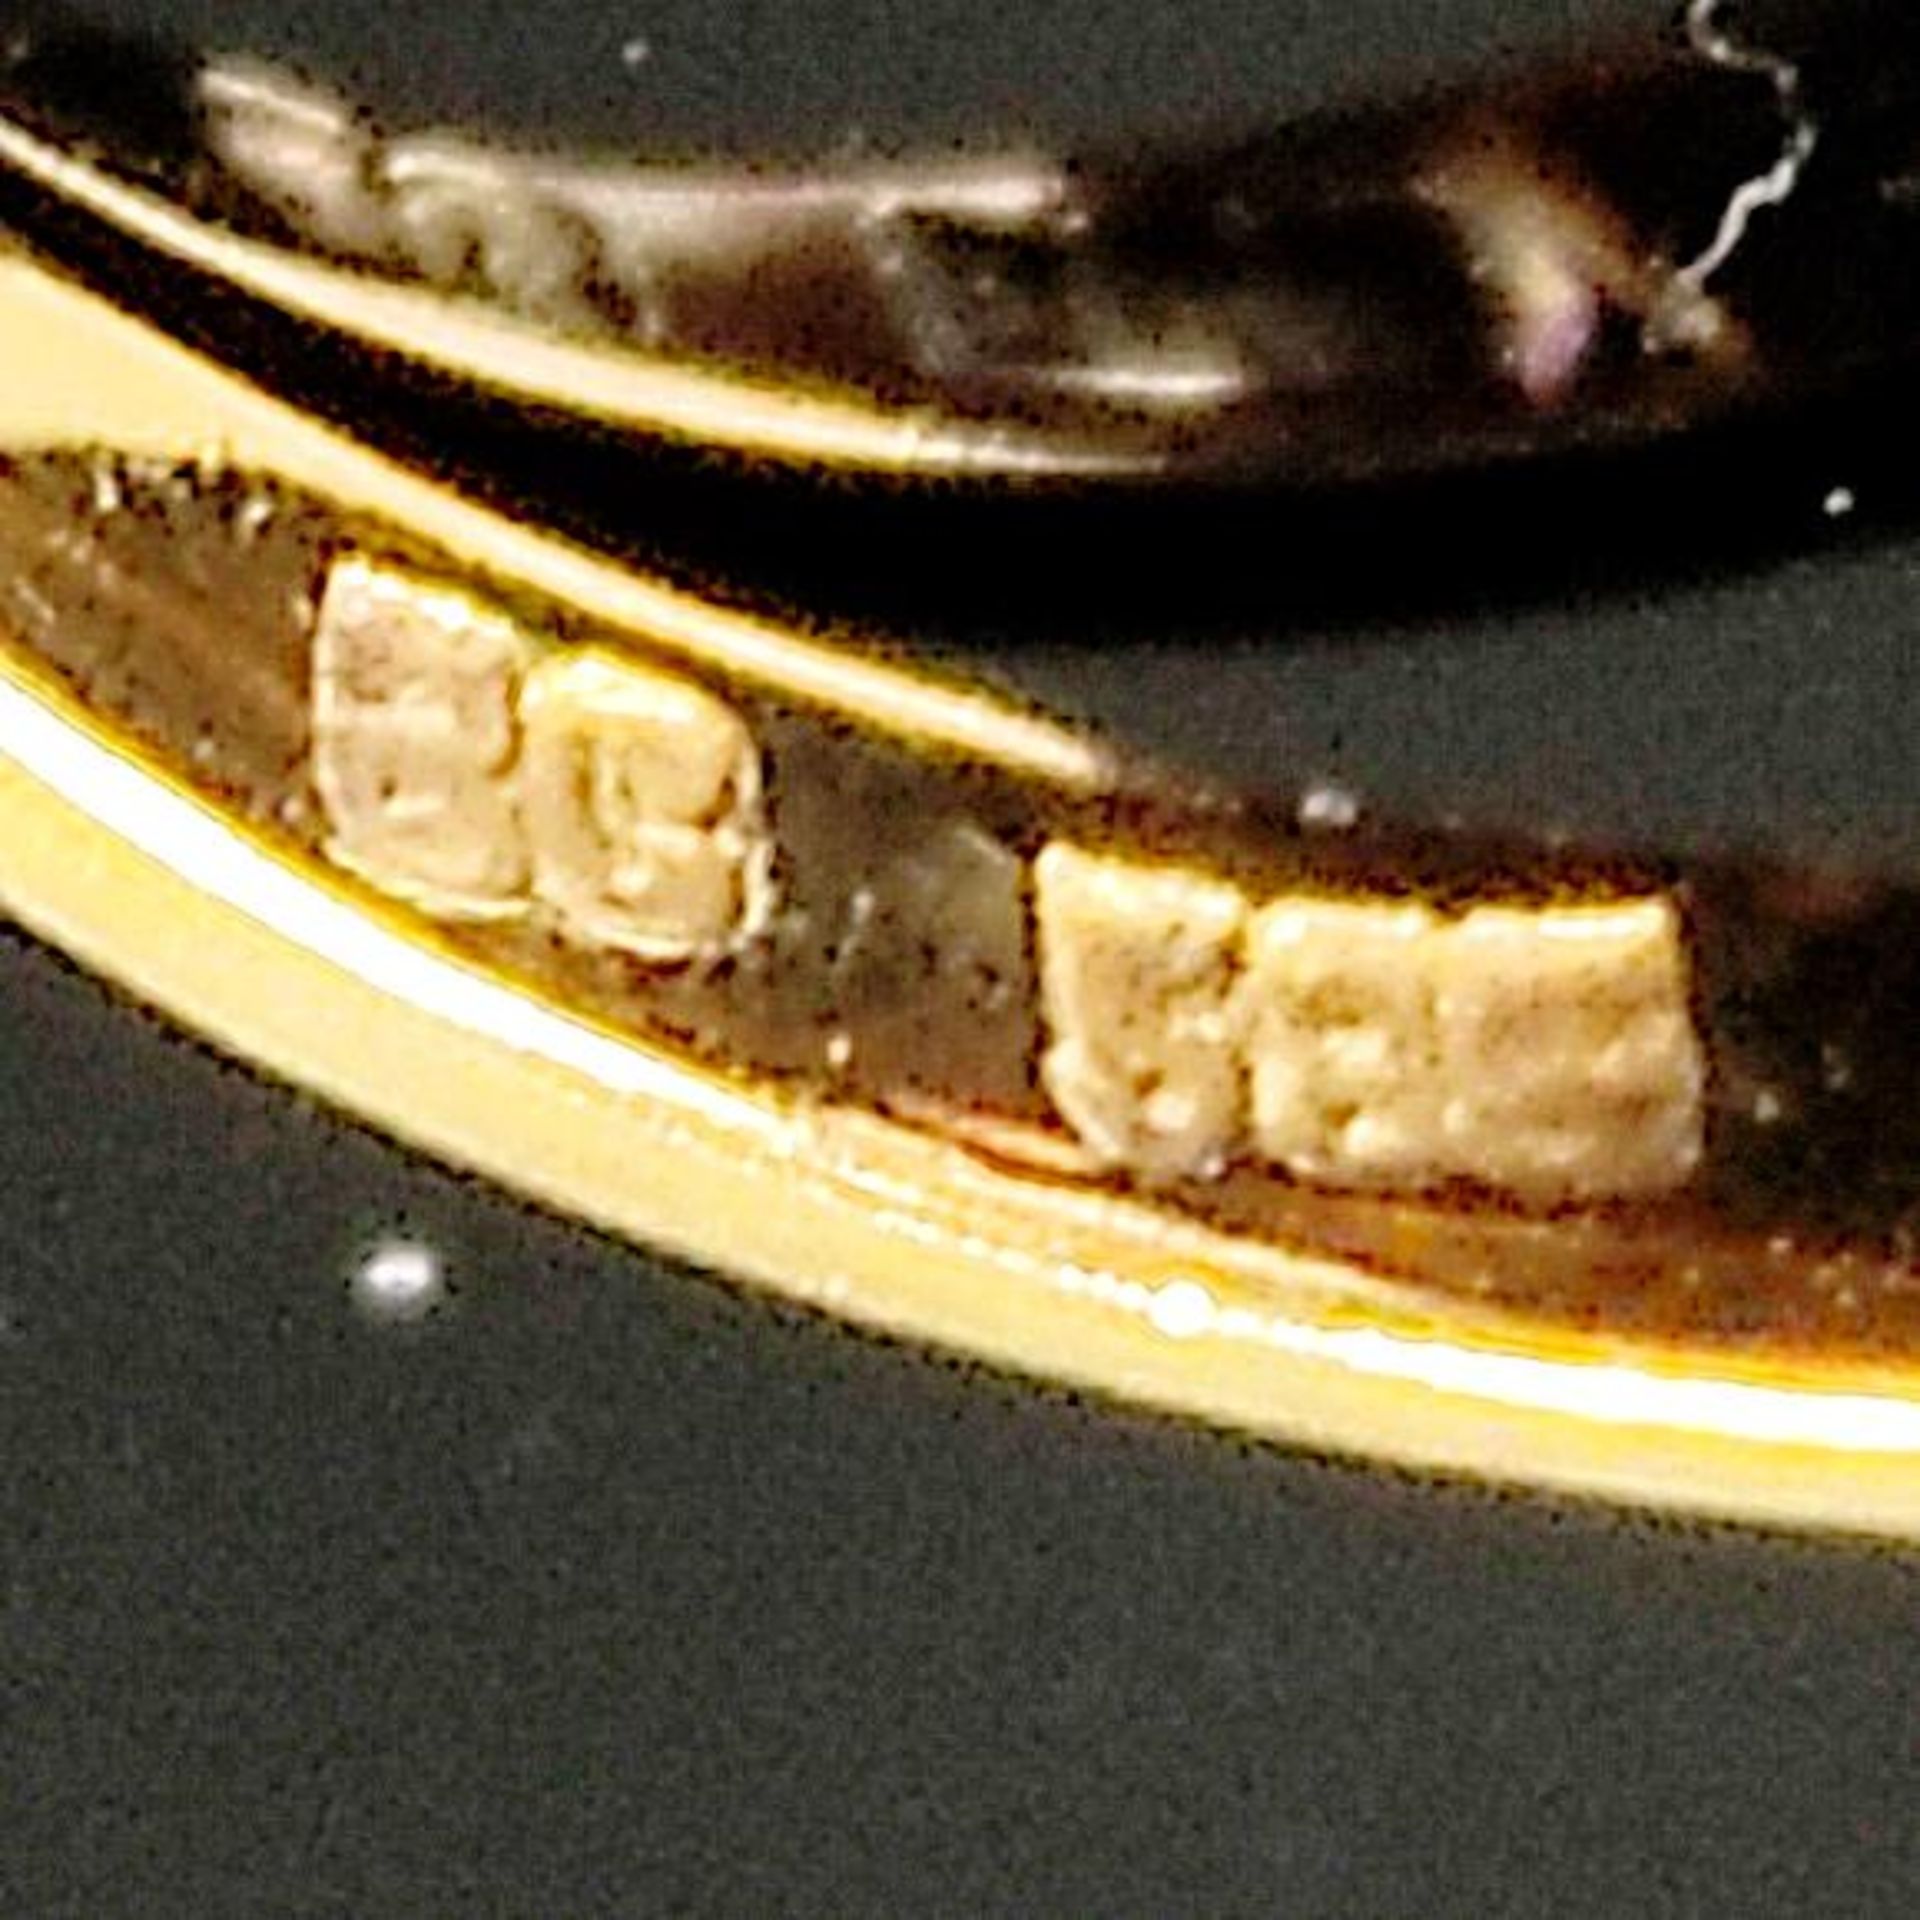 Smaragd-Diamantring, 585/14K Weiß-/Gelbgold (punziert), 3,59g, mittig besetzt mit facettiertem oval - Bild 3 aus 3